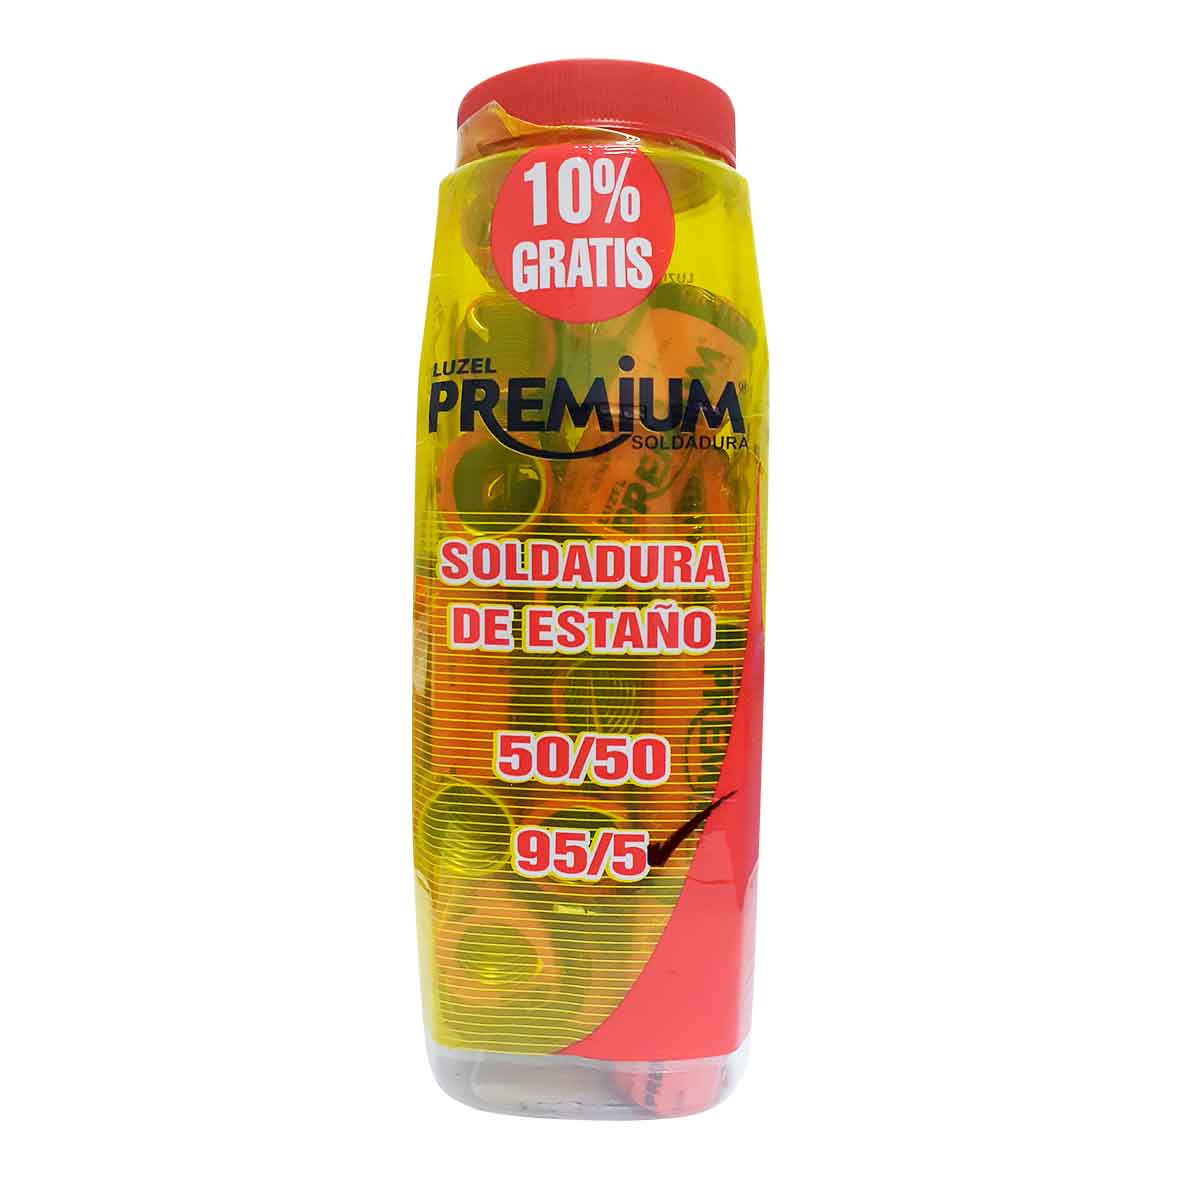 Soldadura Solida Premium 95-5 1.10m 70gr Vitrolero 23 Piezas LUZEL PREMIUM Ferreabasto